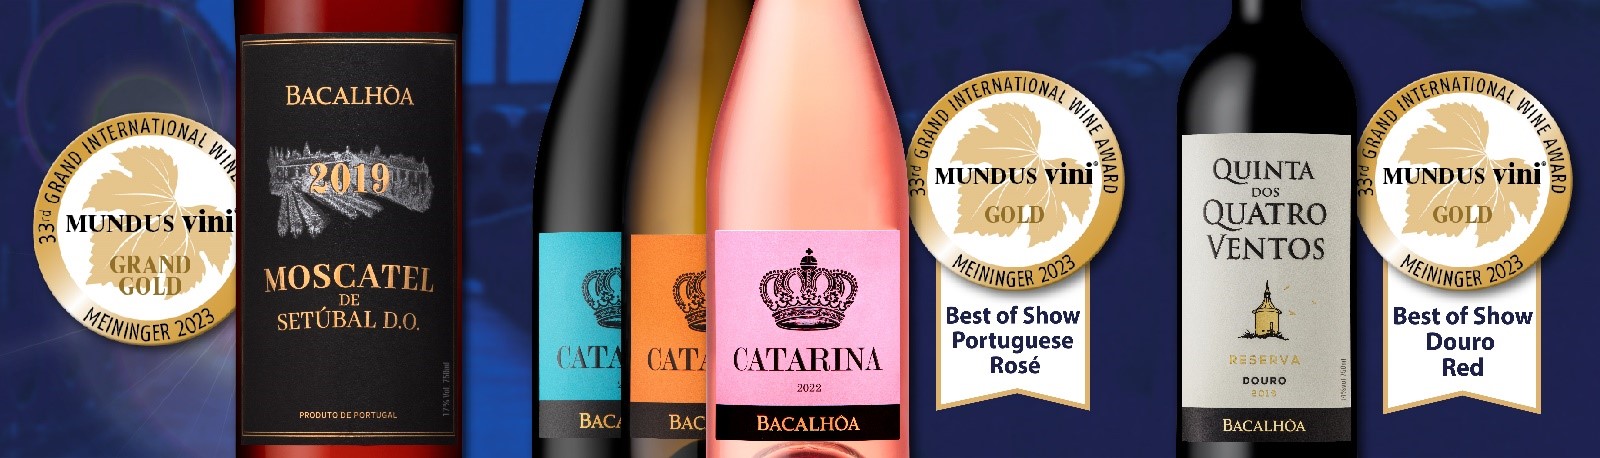 Os vinhos da Bacalhôa foram premiados com 8 medalhas na prova de verão da “Grand International Wine Award - Mundus Vini”, uma das competições de vinhos mais importantes da Alemanha e do Mundo.